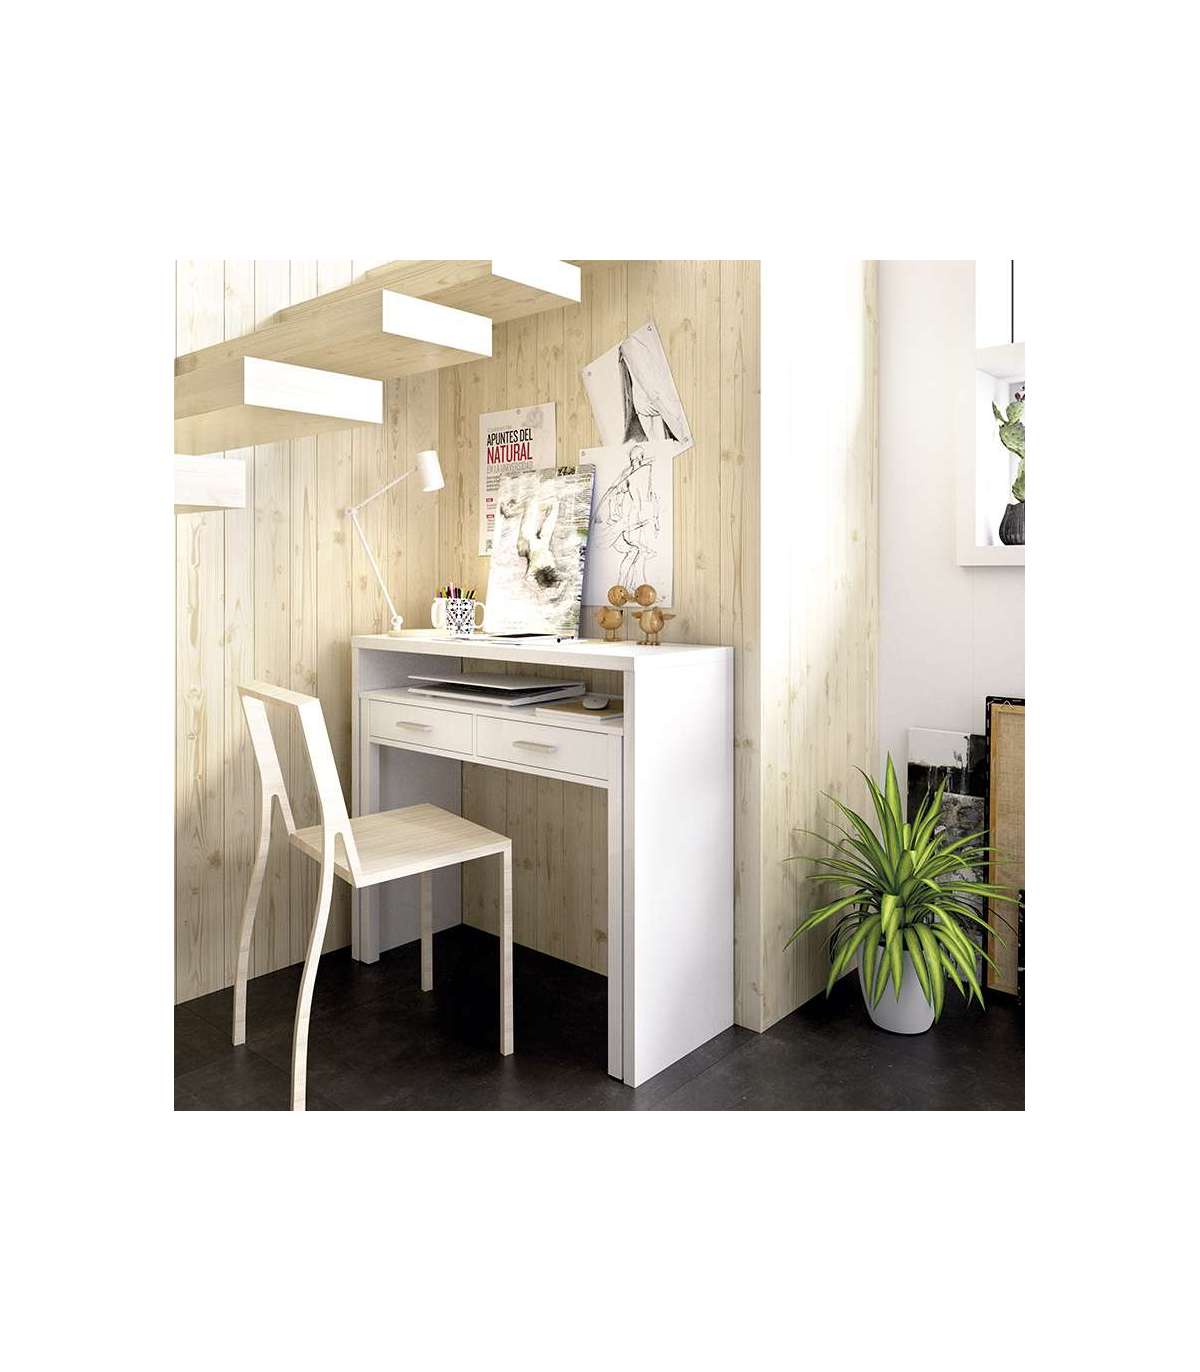 Consola escritorio extensible acabado blanco brillo al mejor precio.